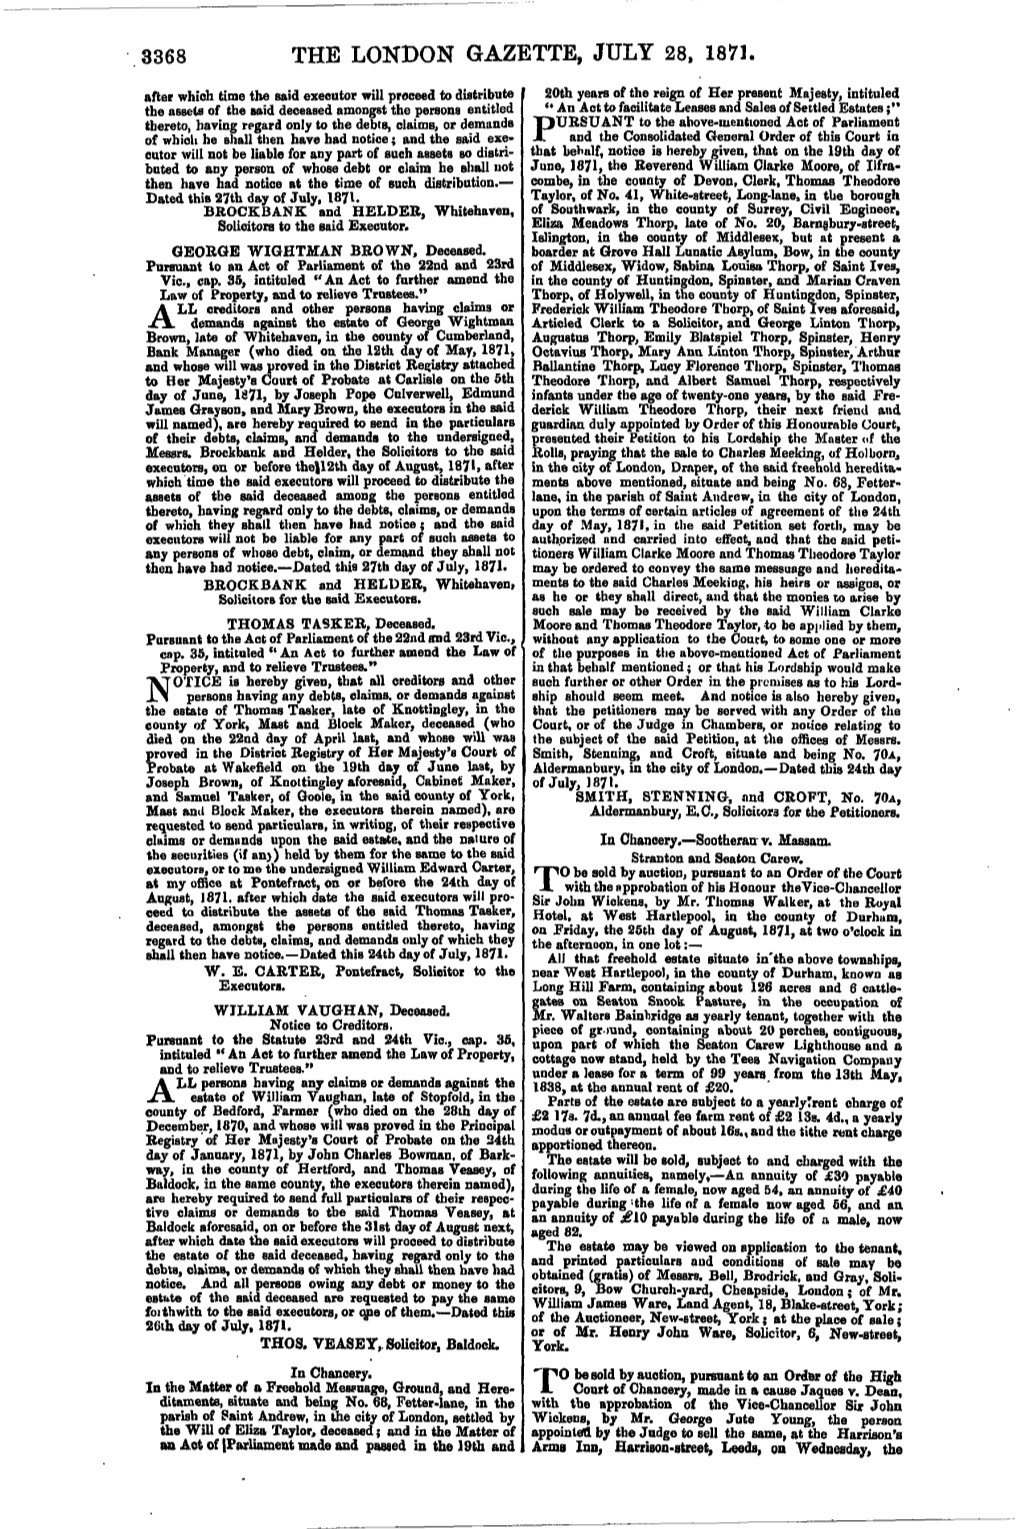 The London Gazette, July 28, 1871